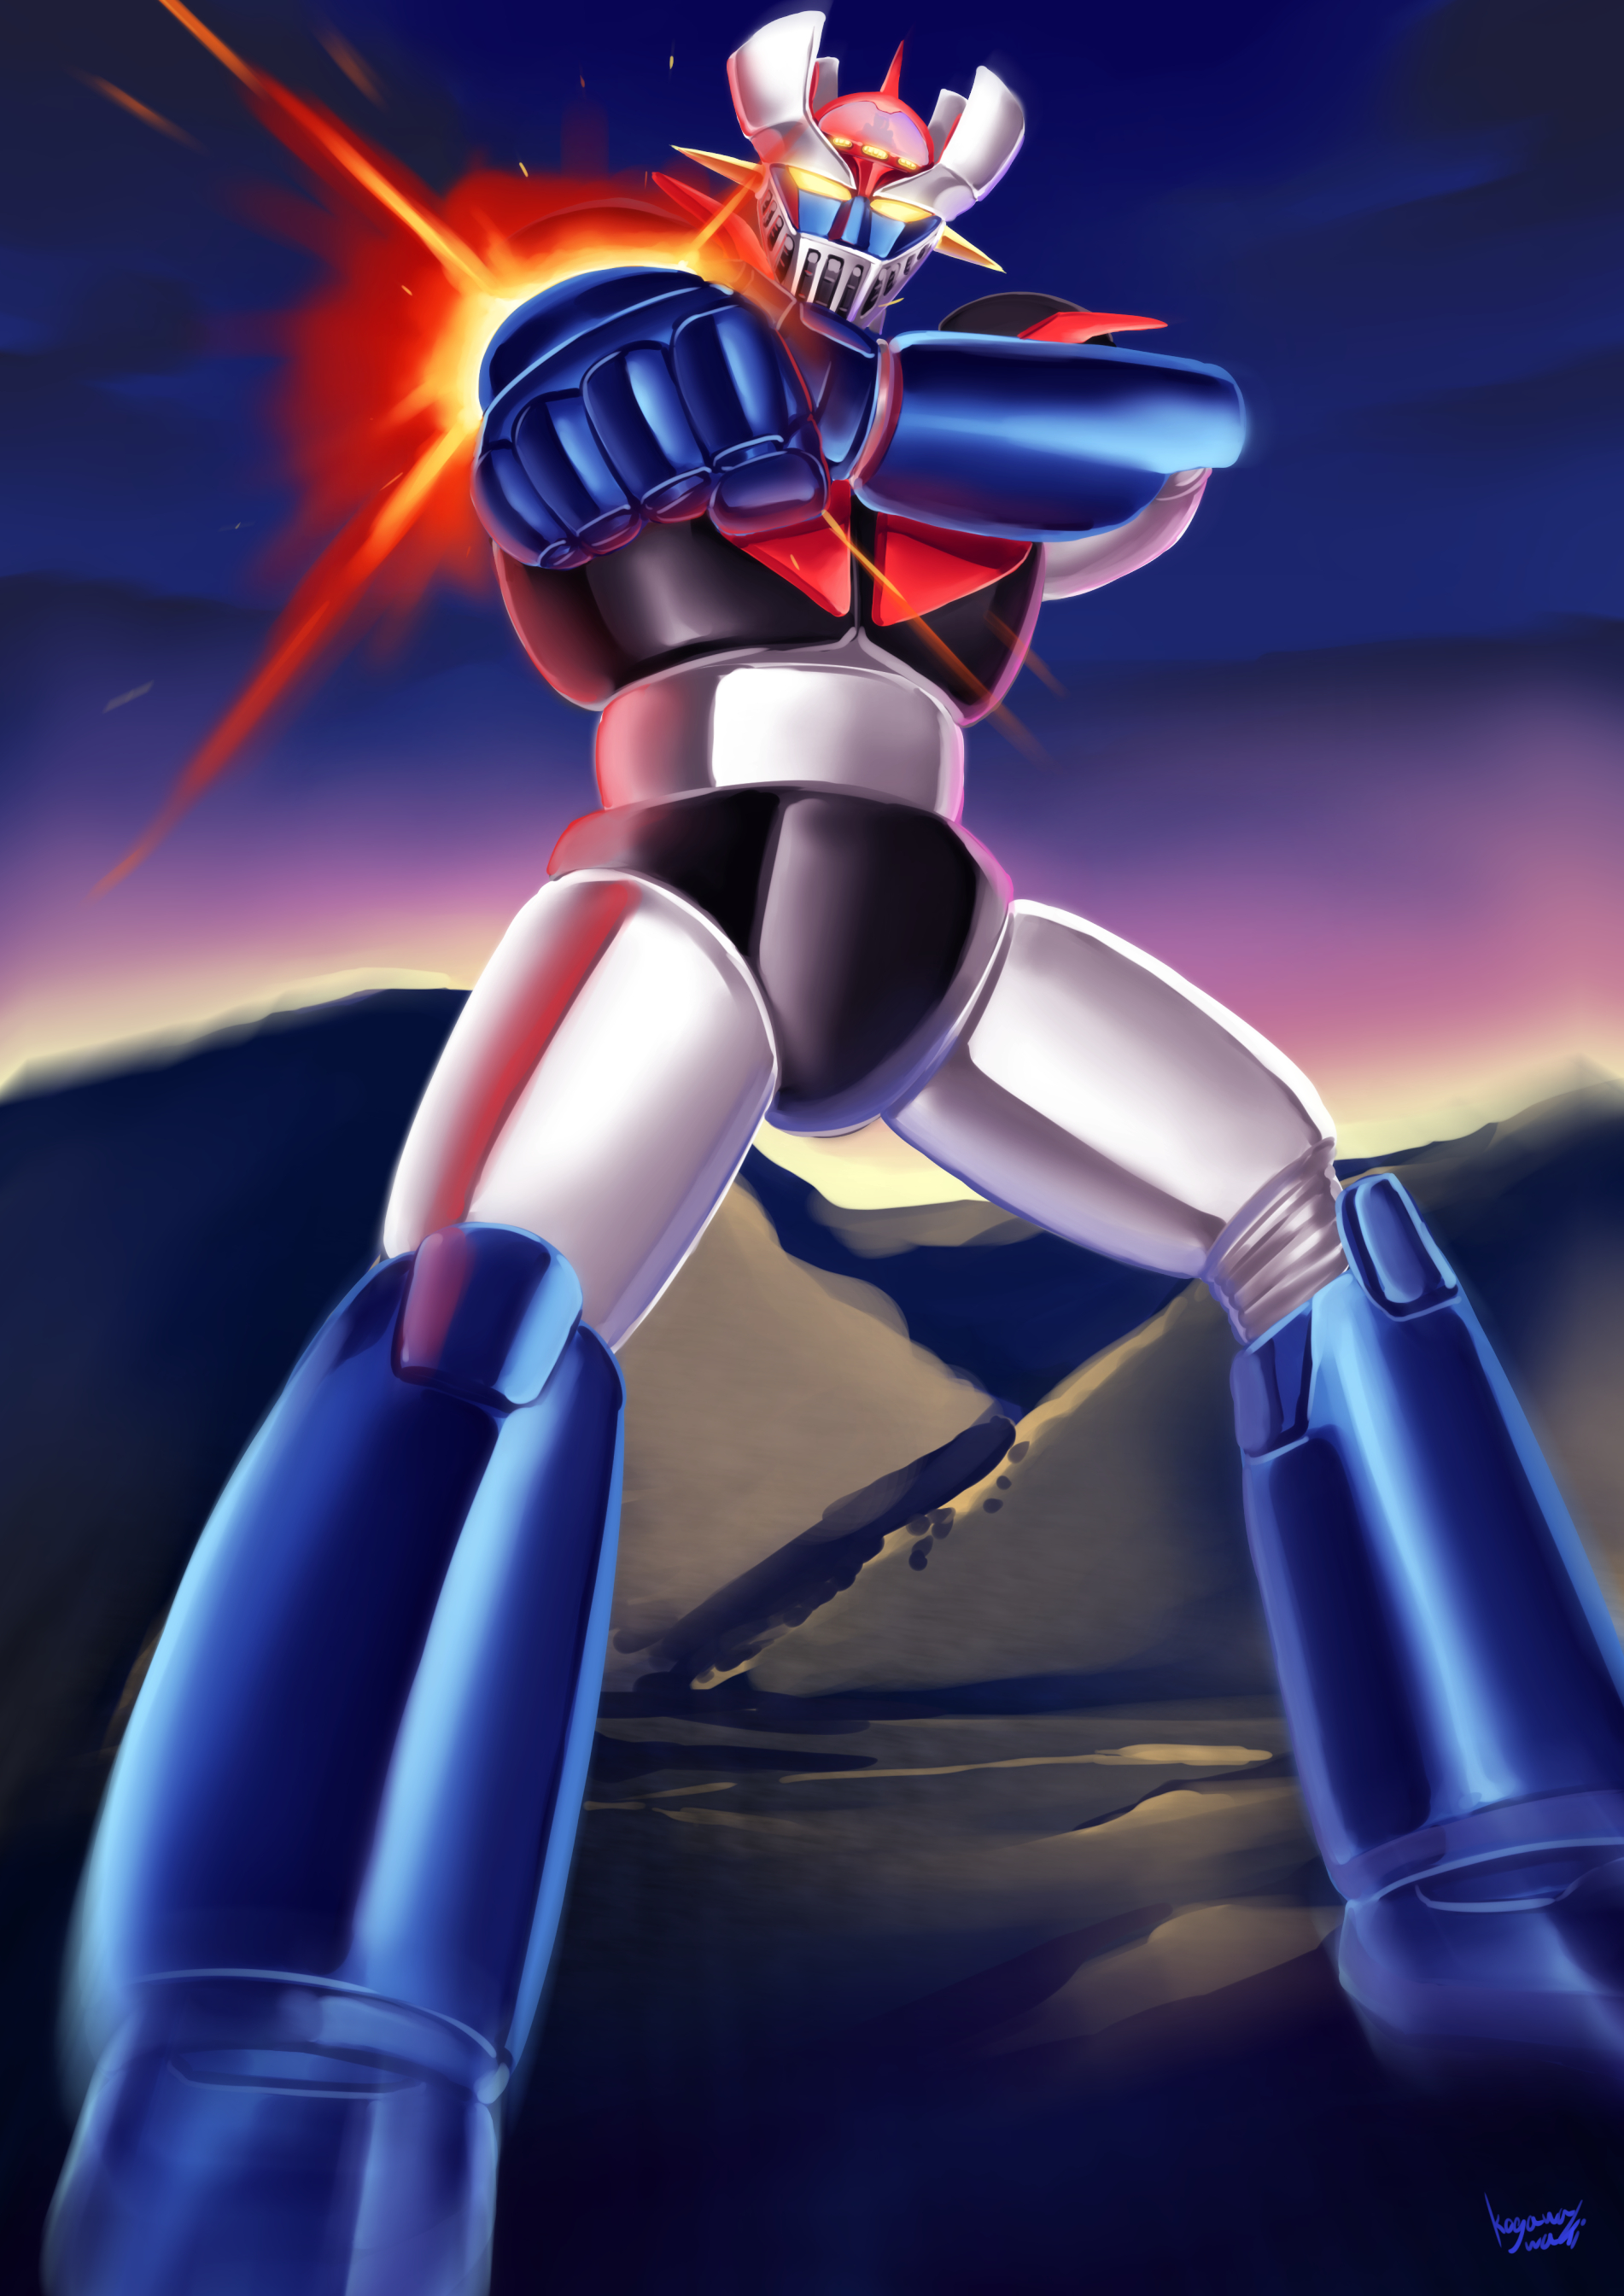 Anime 1902x2689 anime mechs Super Robot Taisen Mazinger Z Mazinger Z (Series) artwork digital art fan art